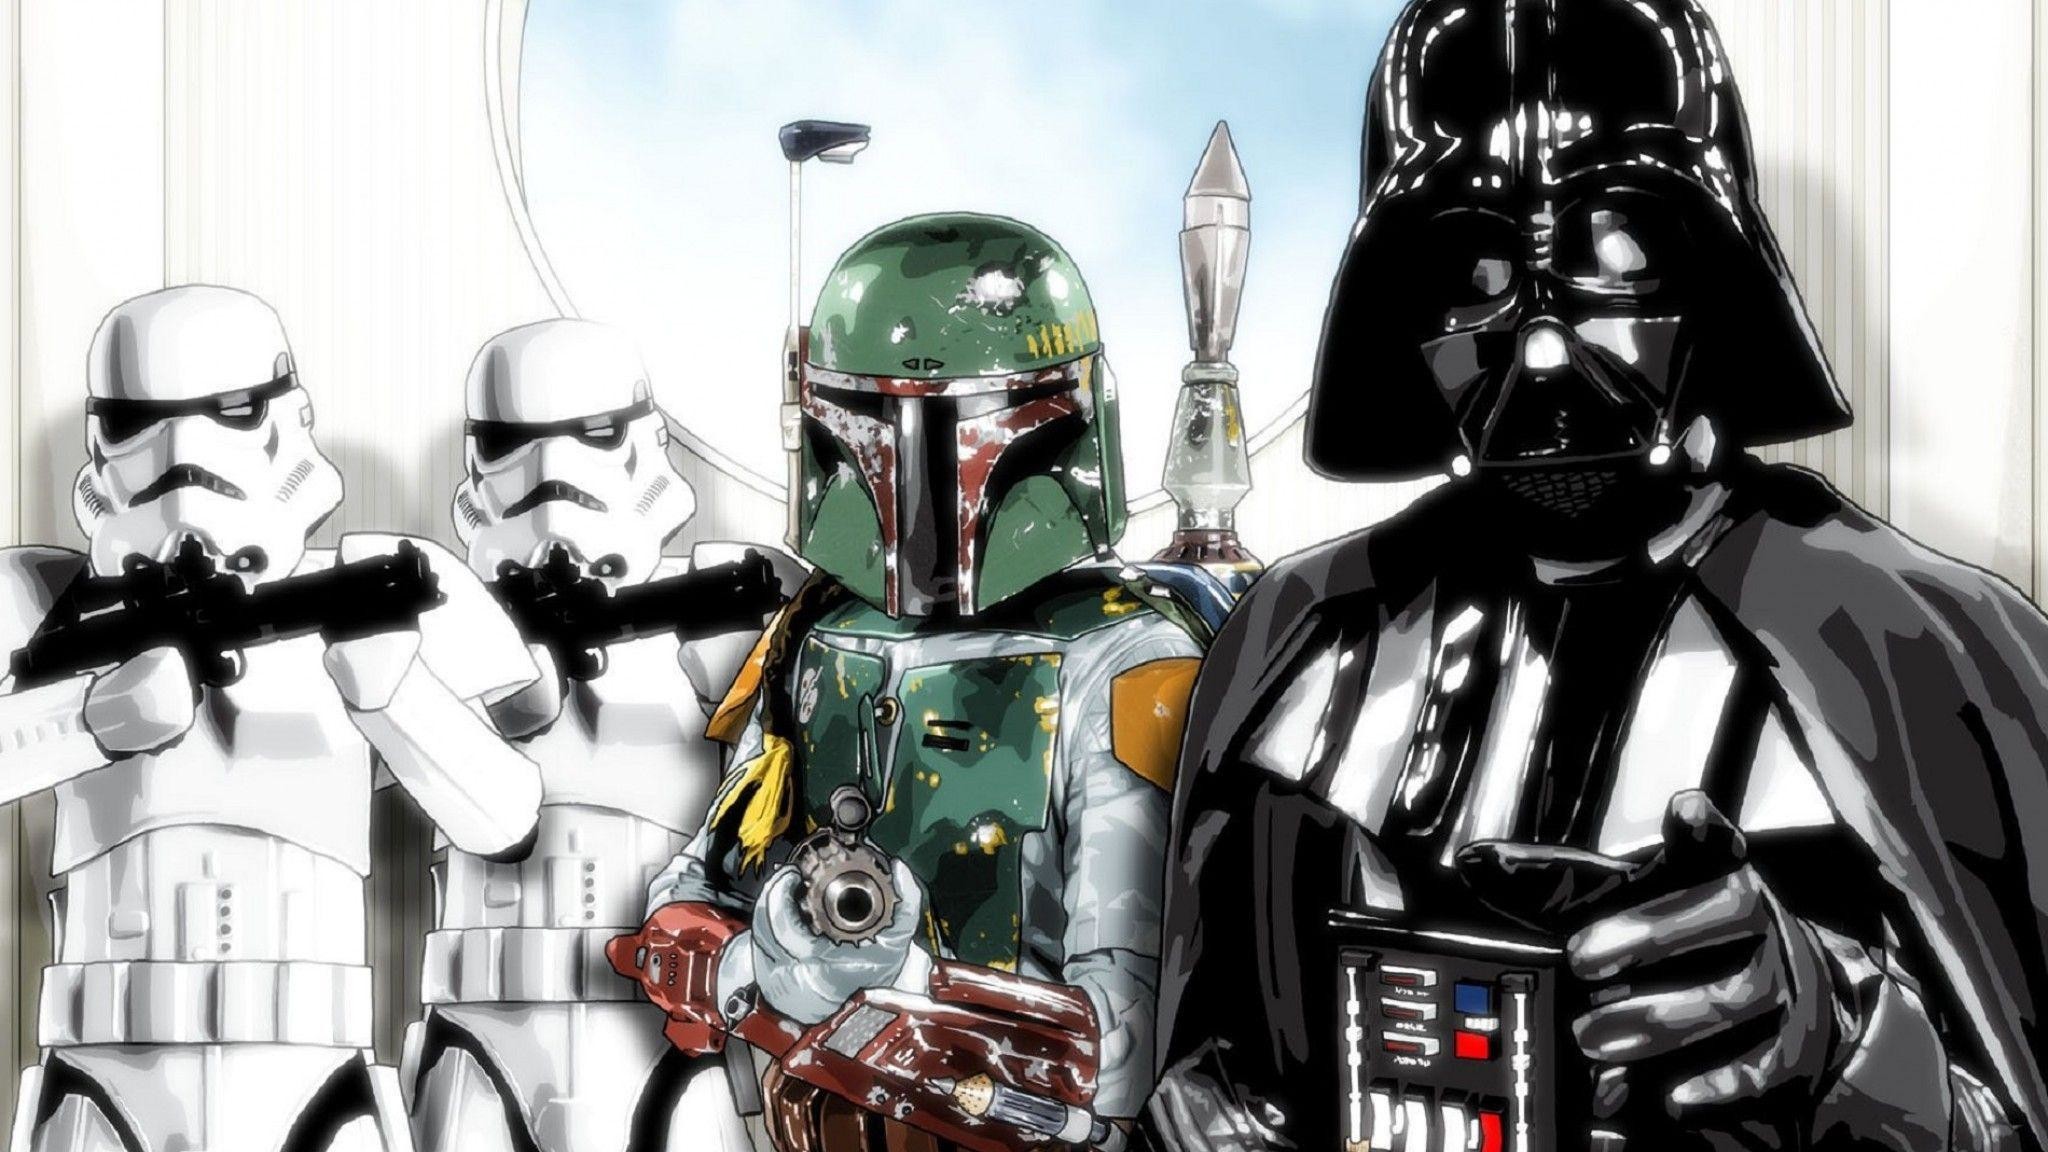 Star Wars Darth Vader Boba Fett - HD Wallpaper 